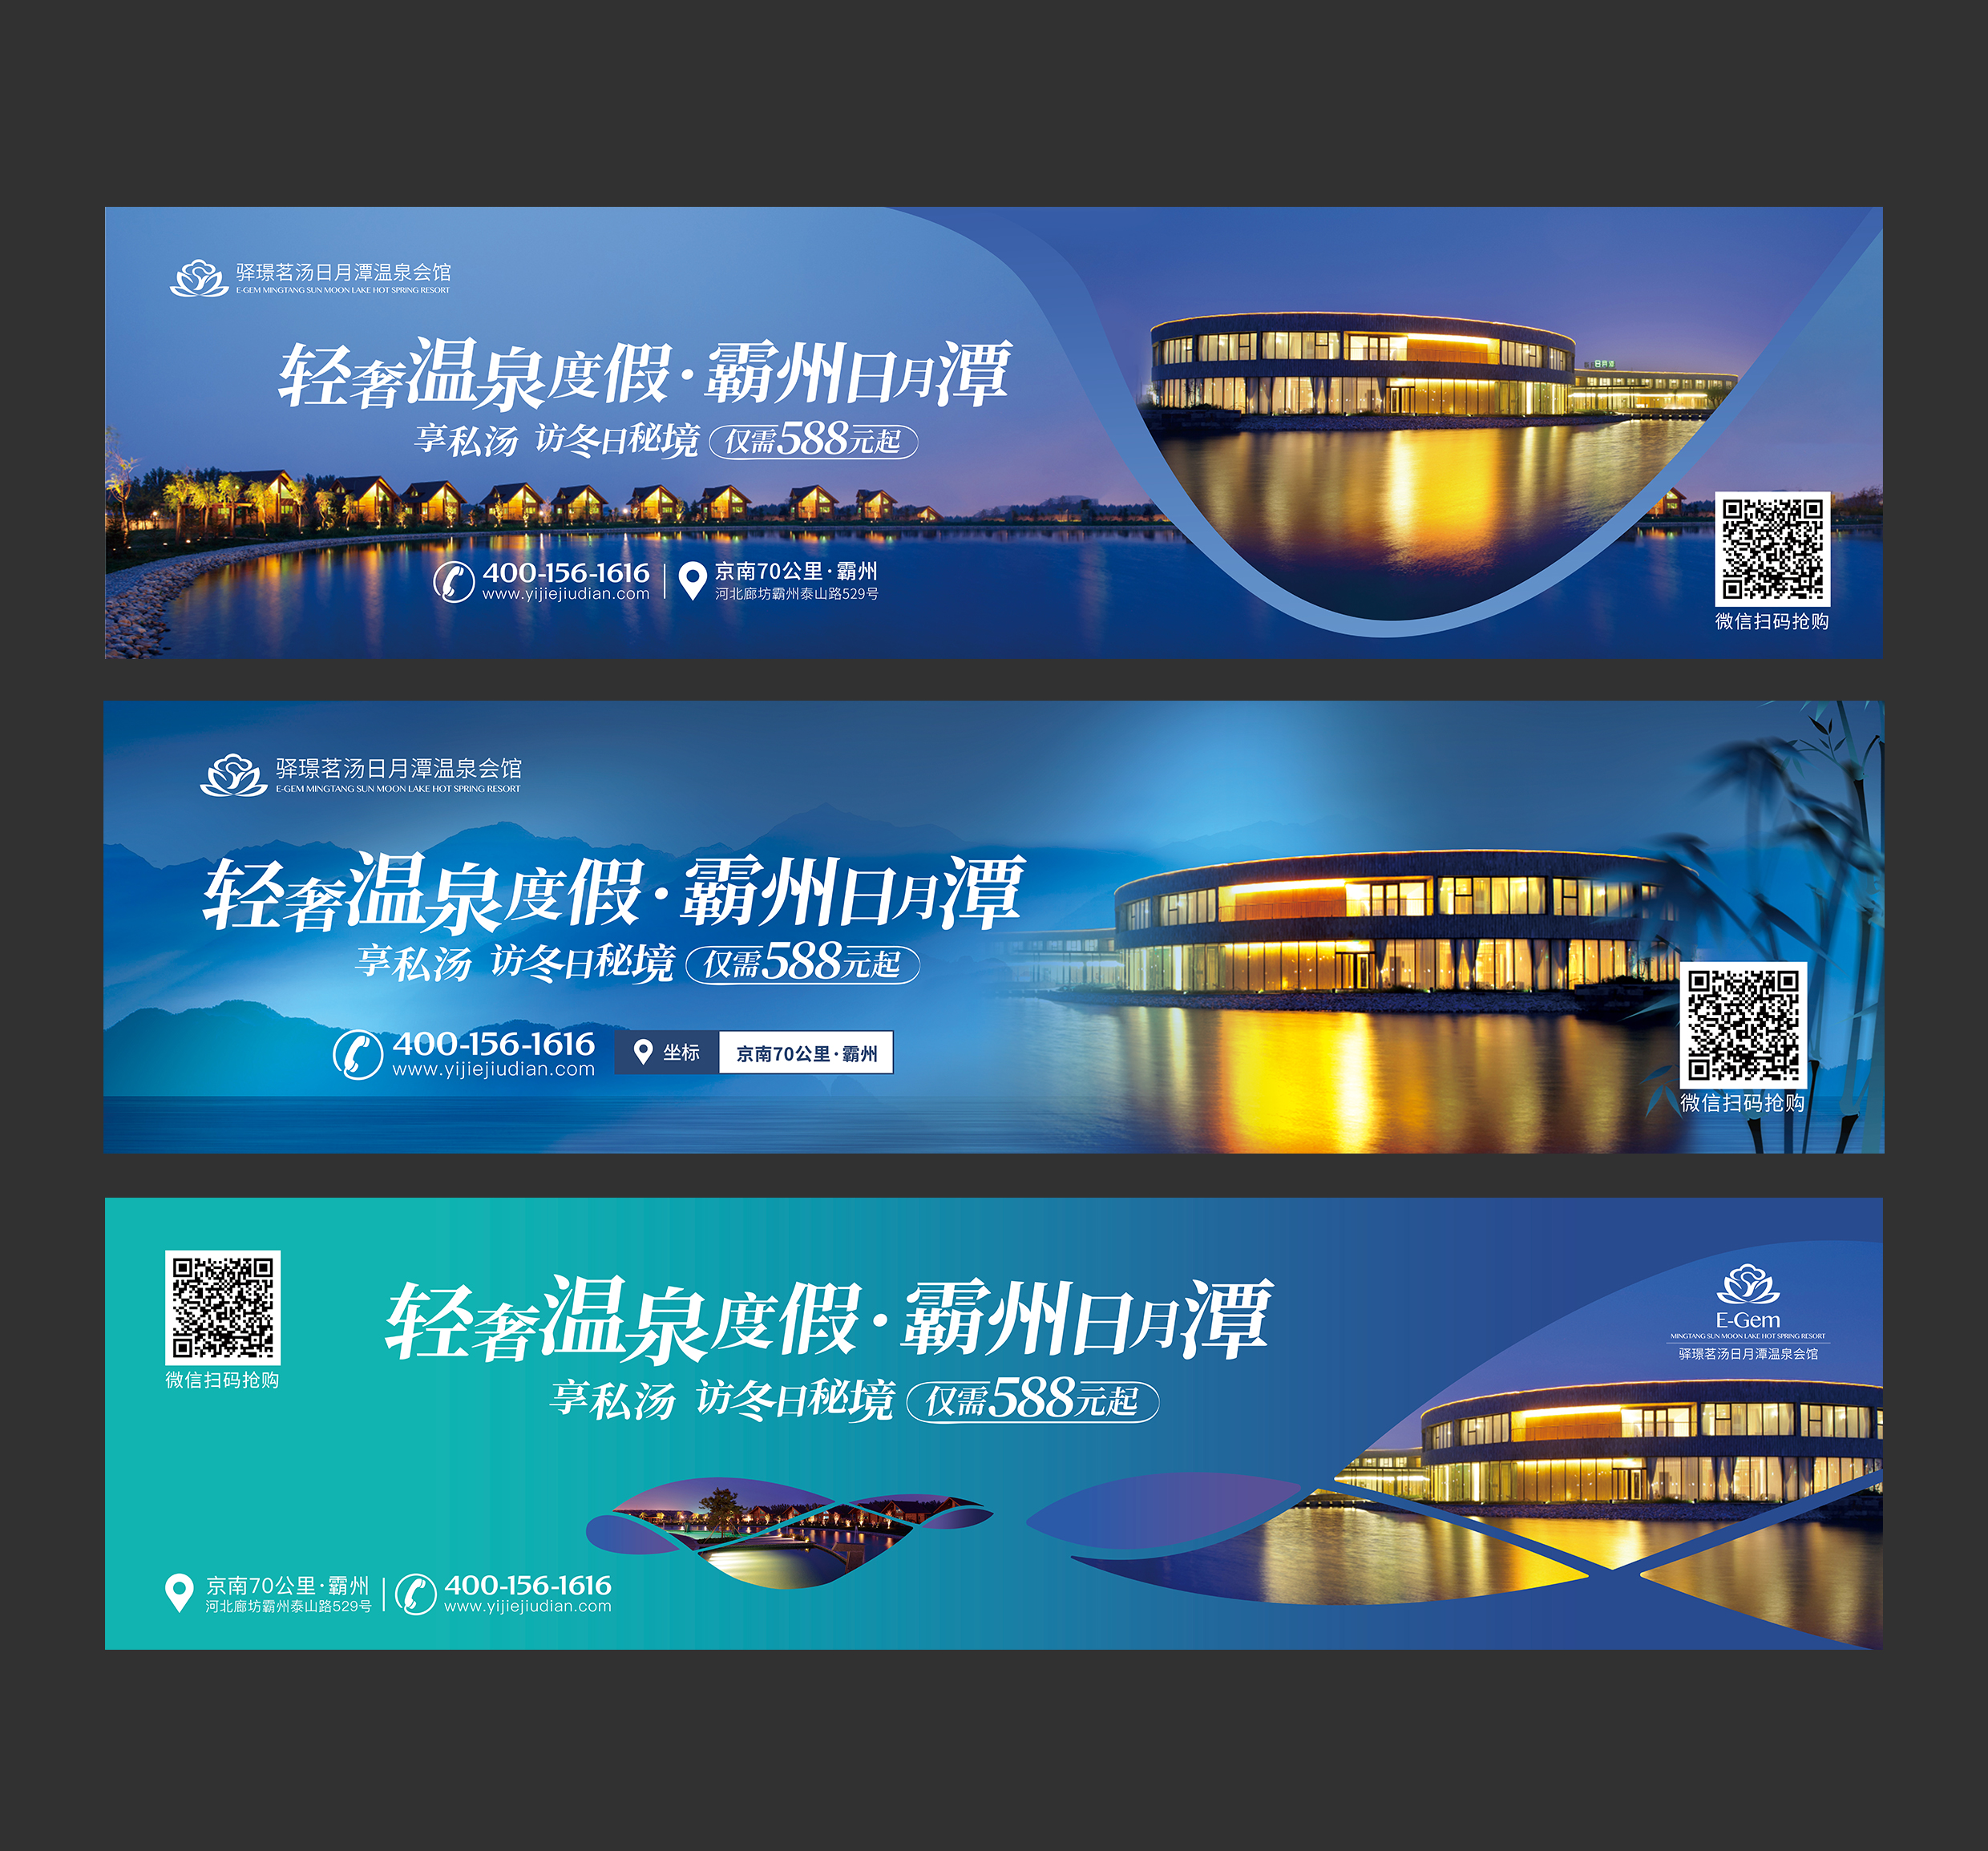 新疆乌鲁木齐单立柱广告牌设计图江阴城管组织拆除一大型高立柱广告设施